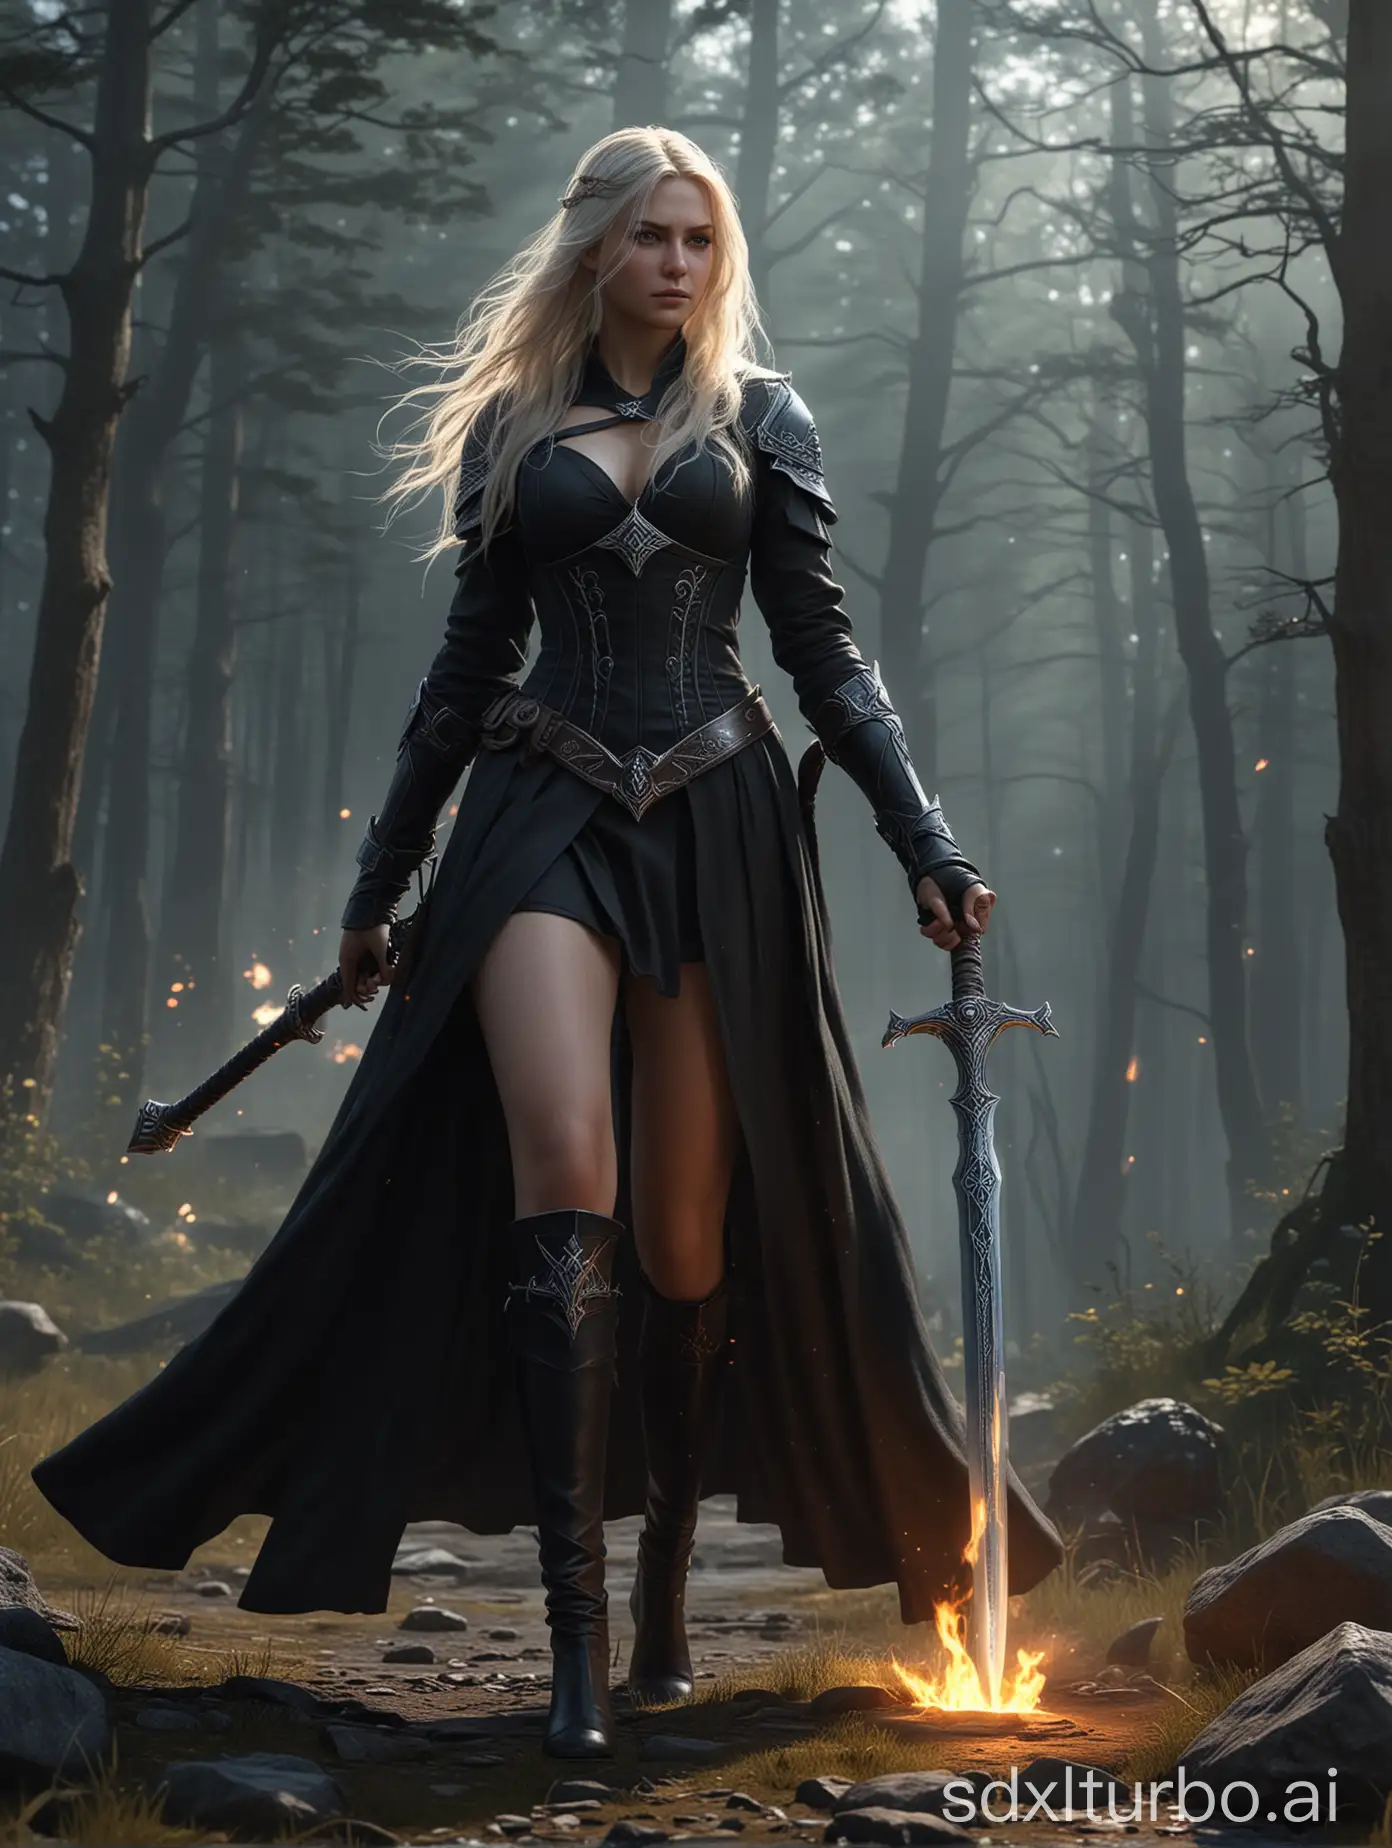 Majestic-Nordic-Fantasy-Art-Female-Wizard-Wielding-Glowing-Sword-in-Battle